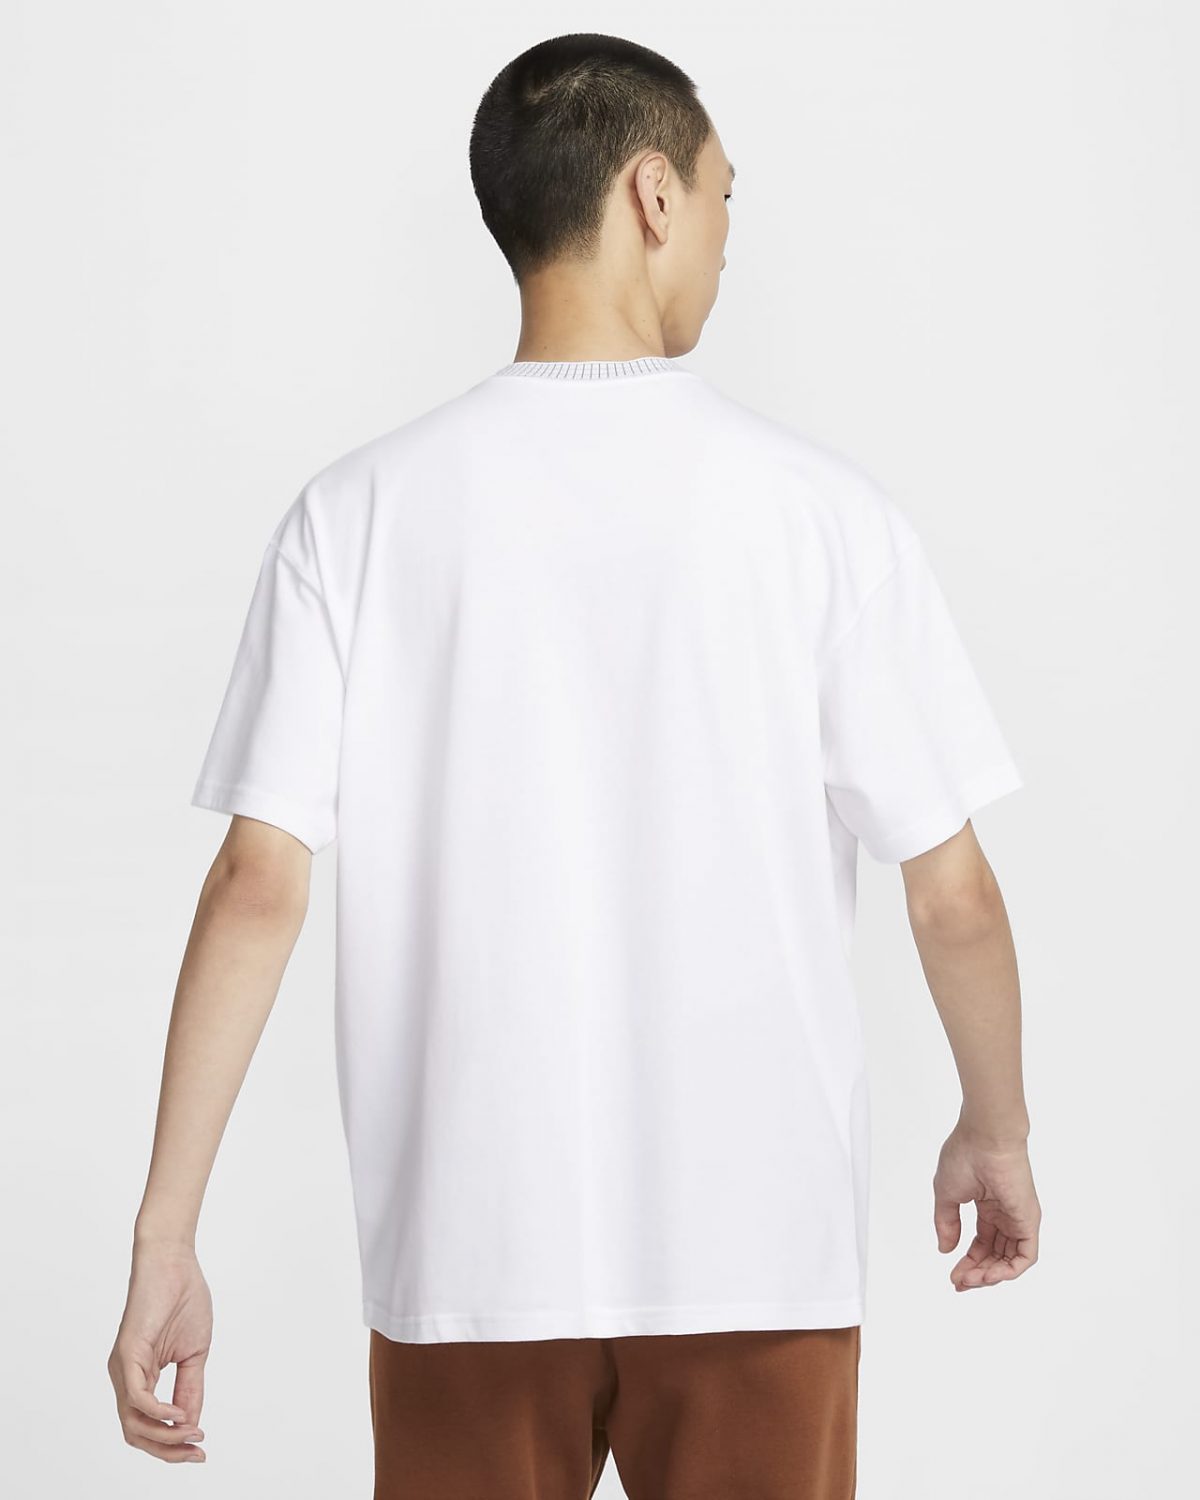 Мужская футболка Nike Sportswear белая фотография